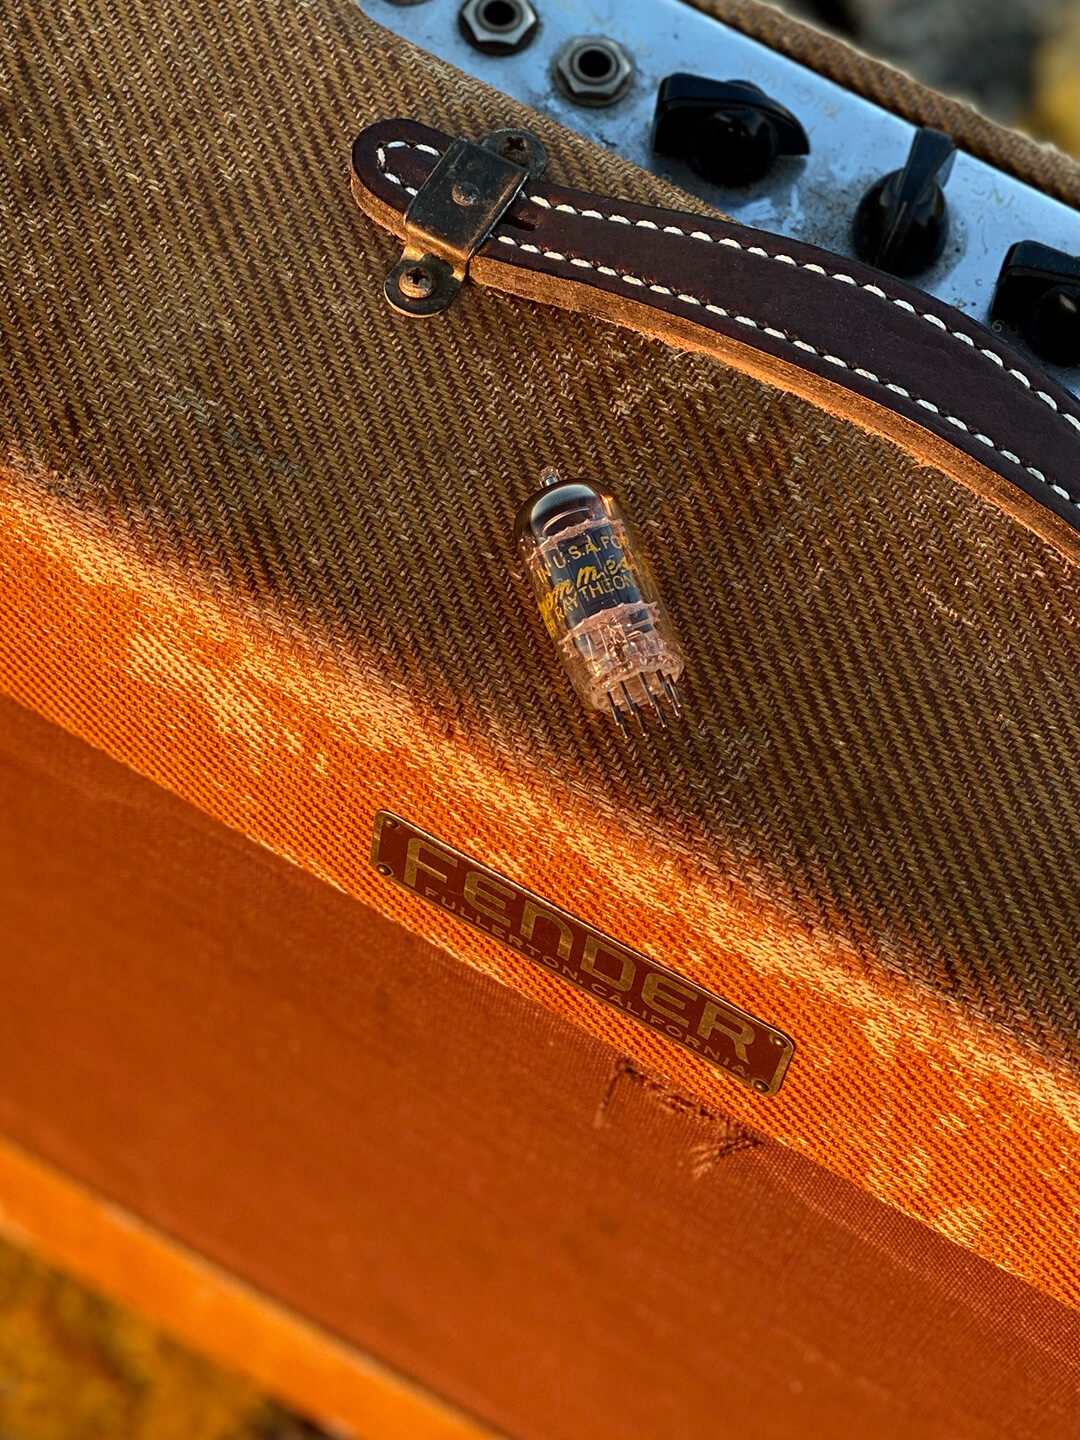 A vintage vacuum tube on top of a tweed Fender amp